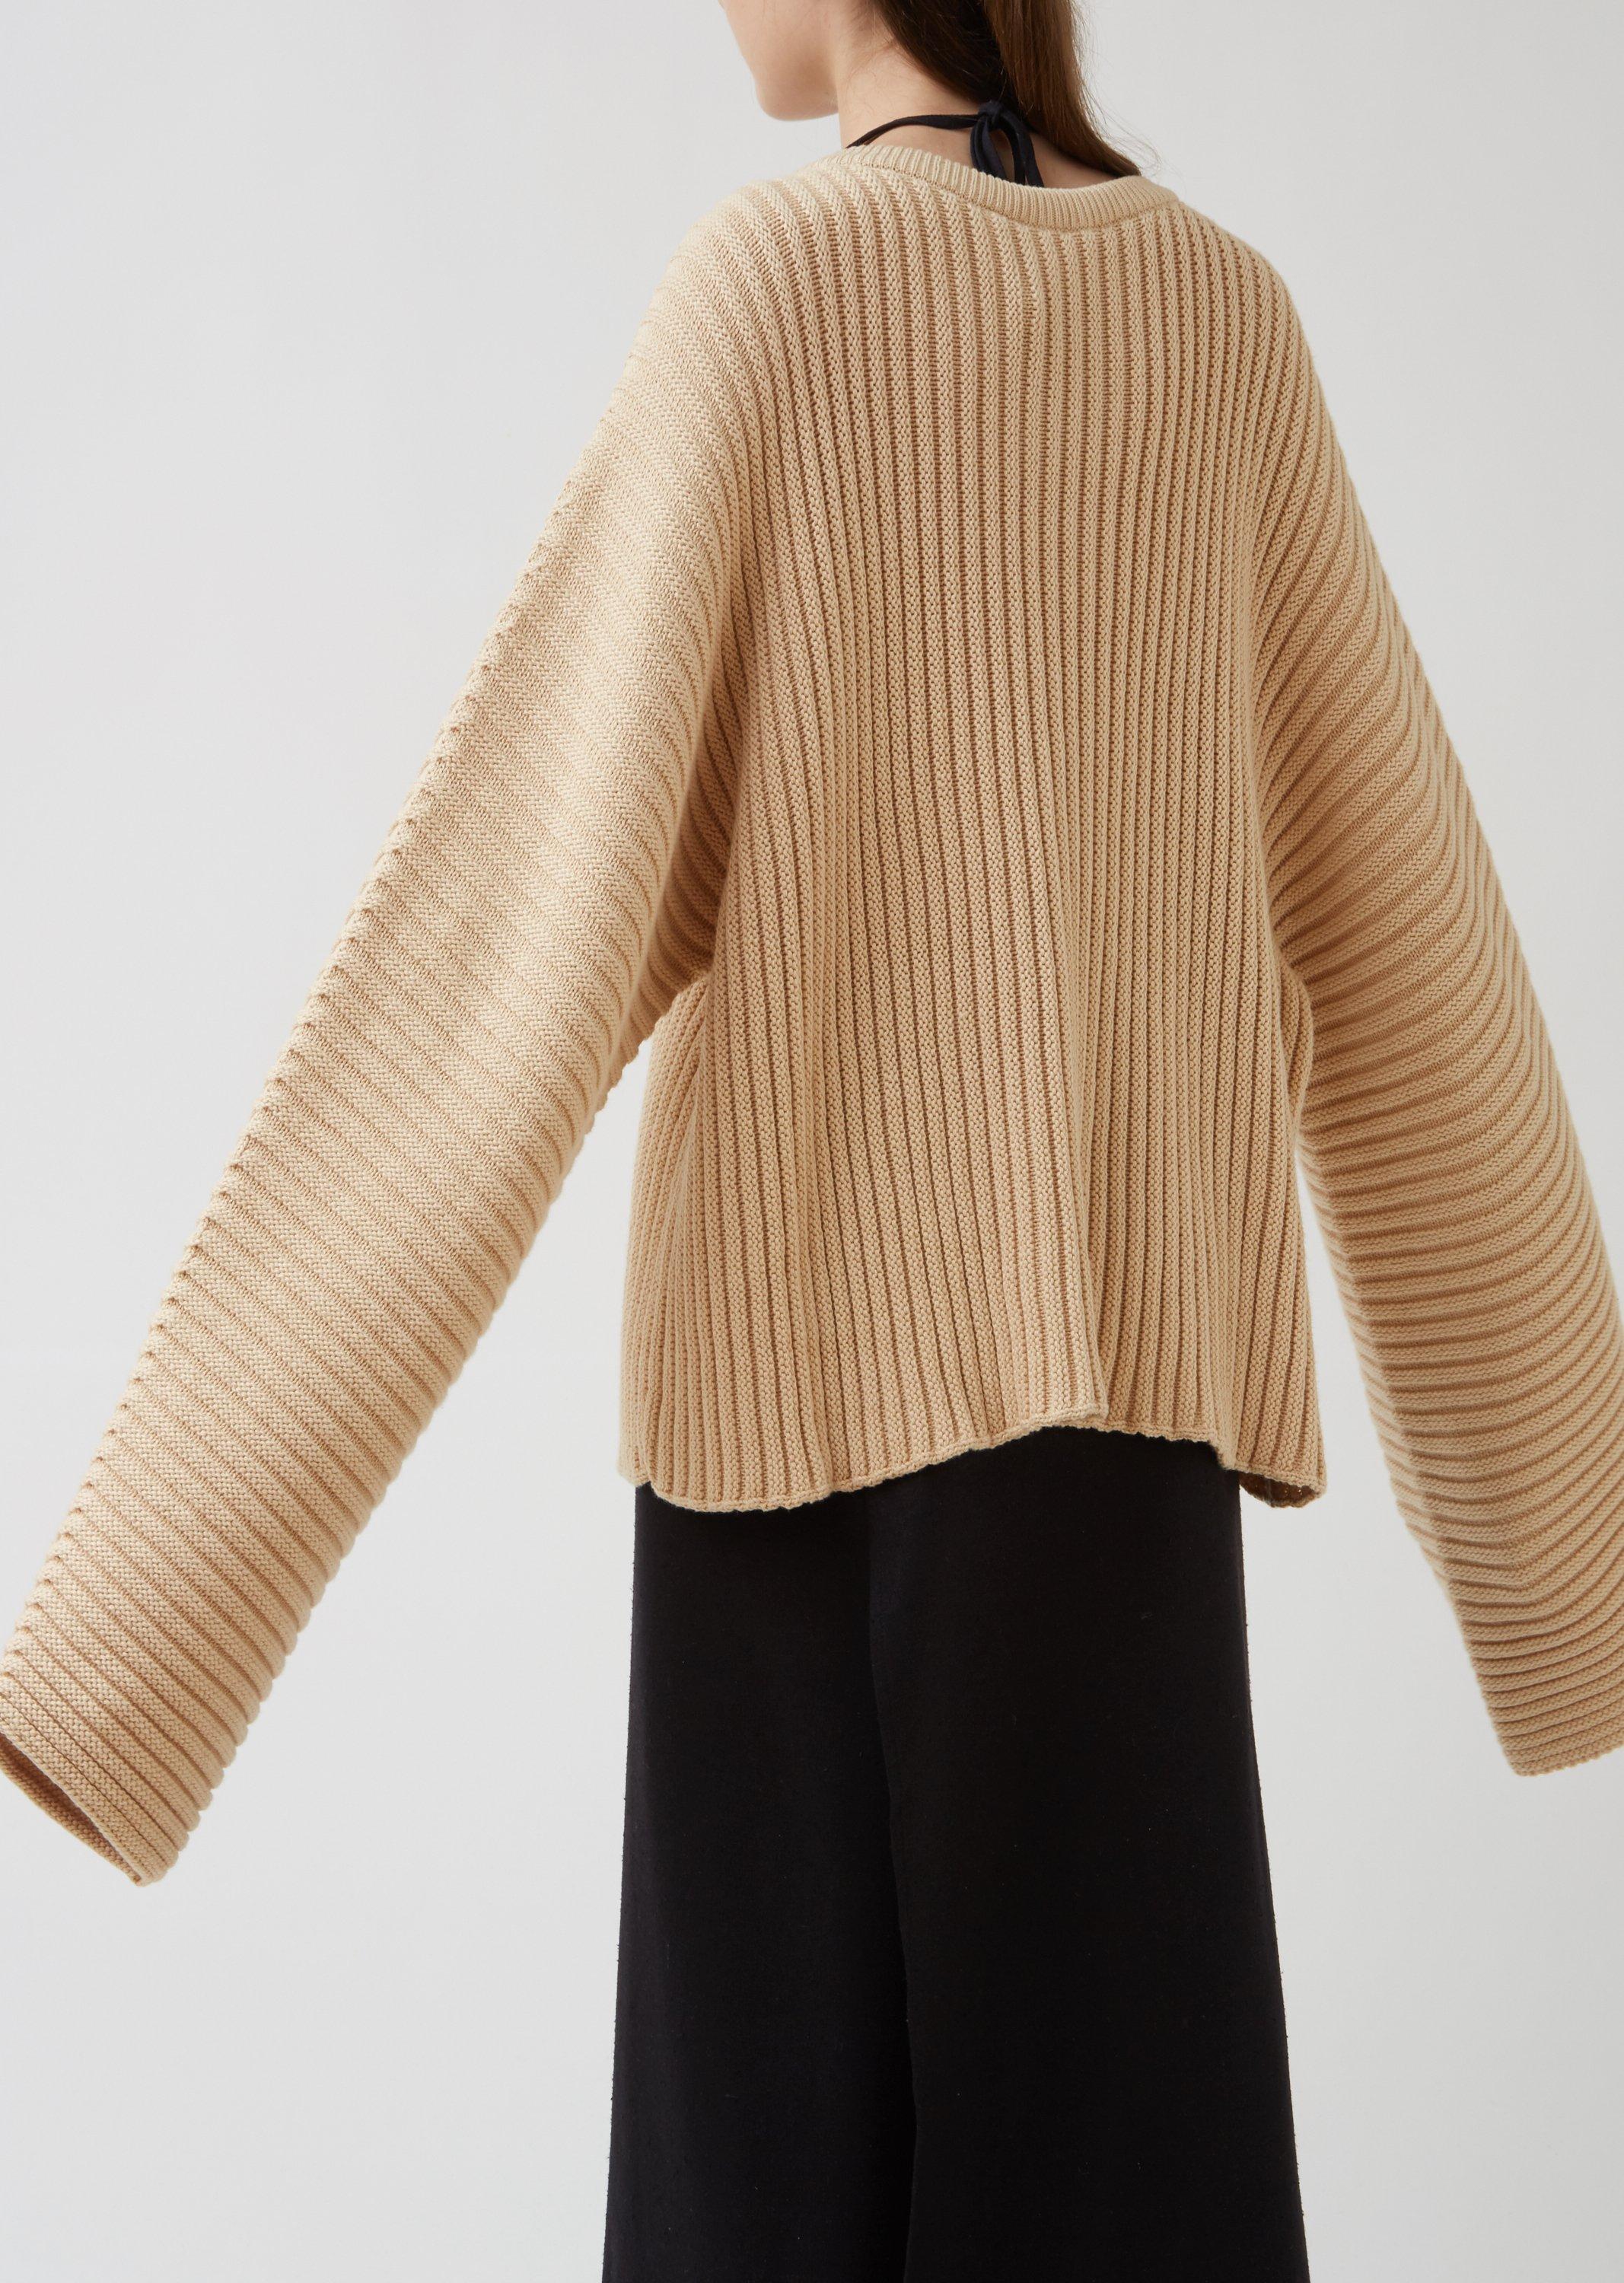 Baserange Cotton Rib Kai Sweater in Natural | Lyst